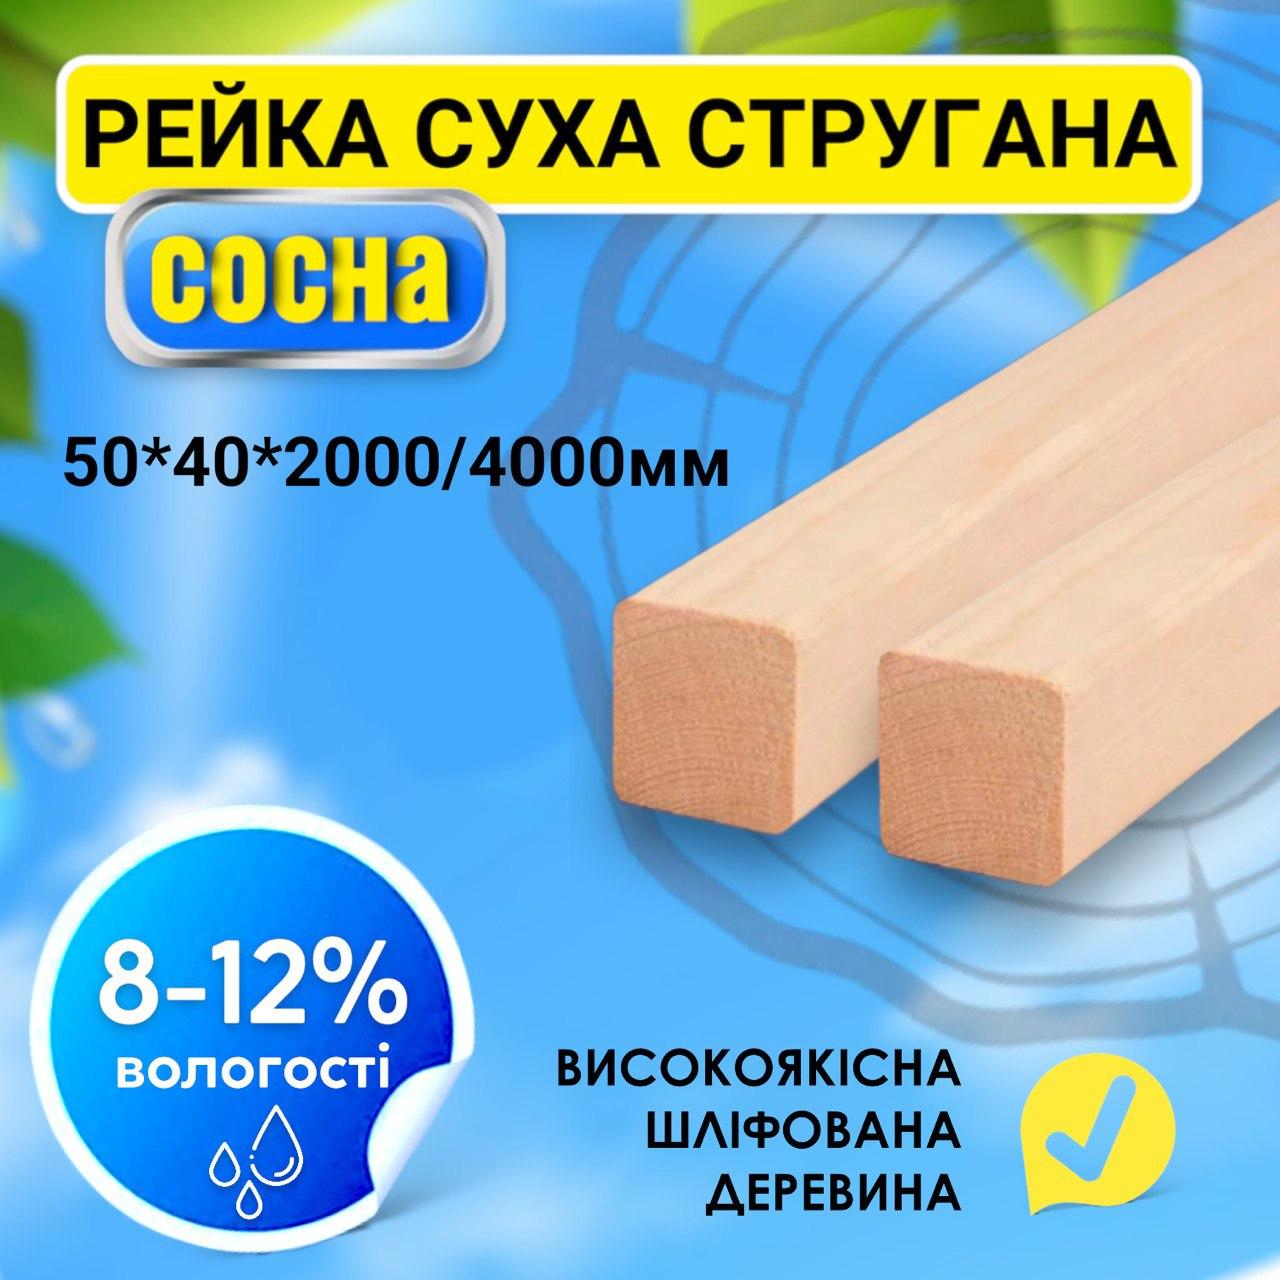 ✅ Суха стругана дерев'яна рейка брус найвищої якості  50*40*2000/4000 мм, пиломатеріал, дошка